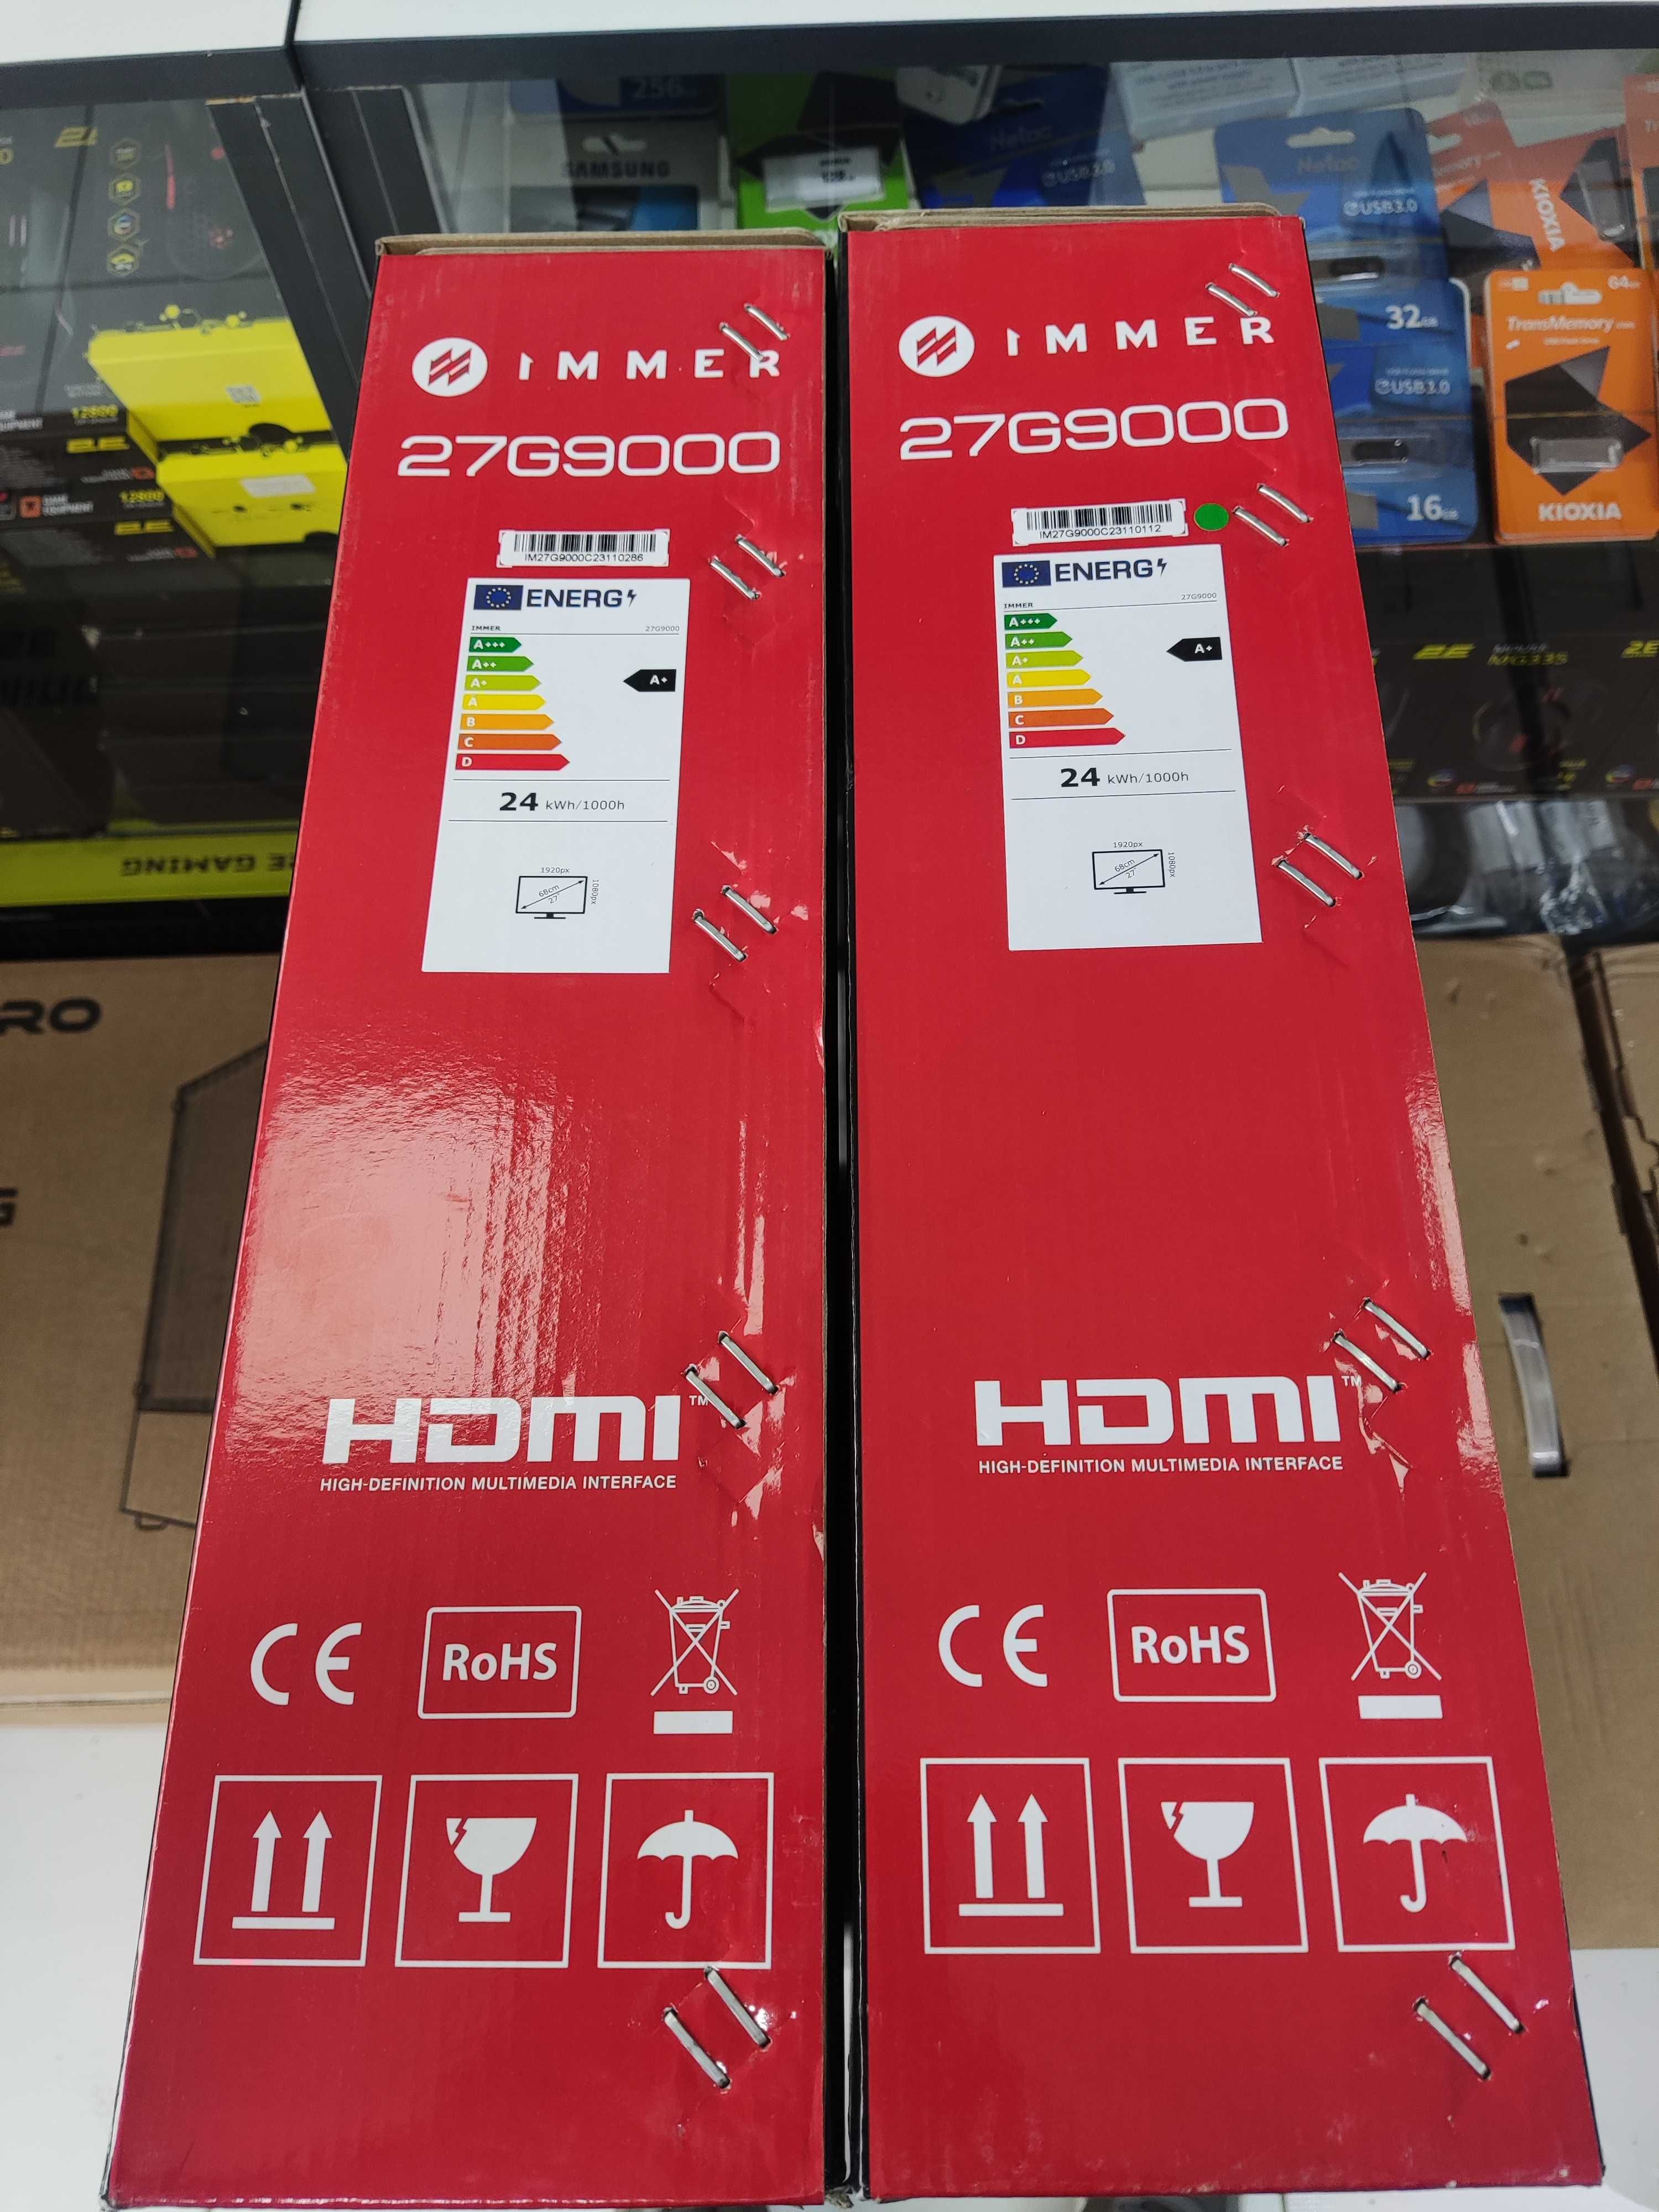 Монитор Immer Curved LED 27G9000 (HDMI+DP) 165hz, FHD НОВЫЙ